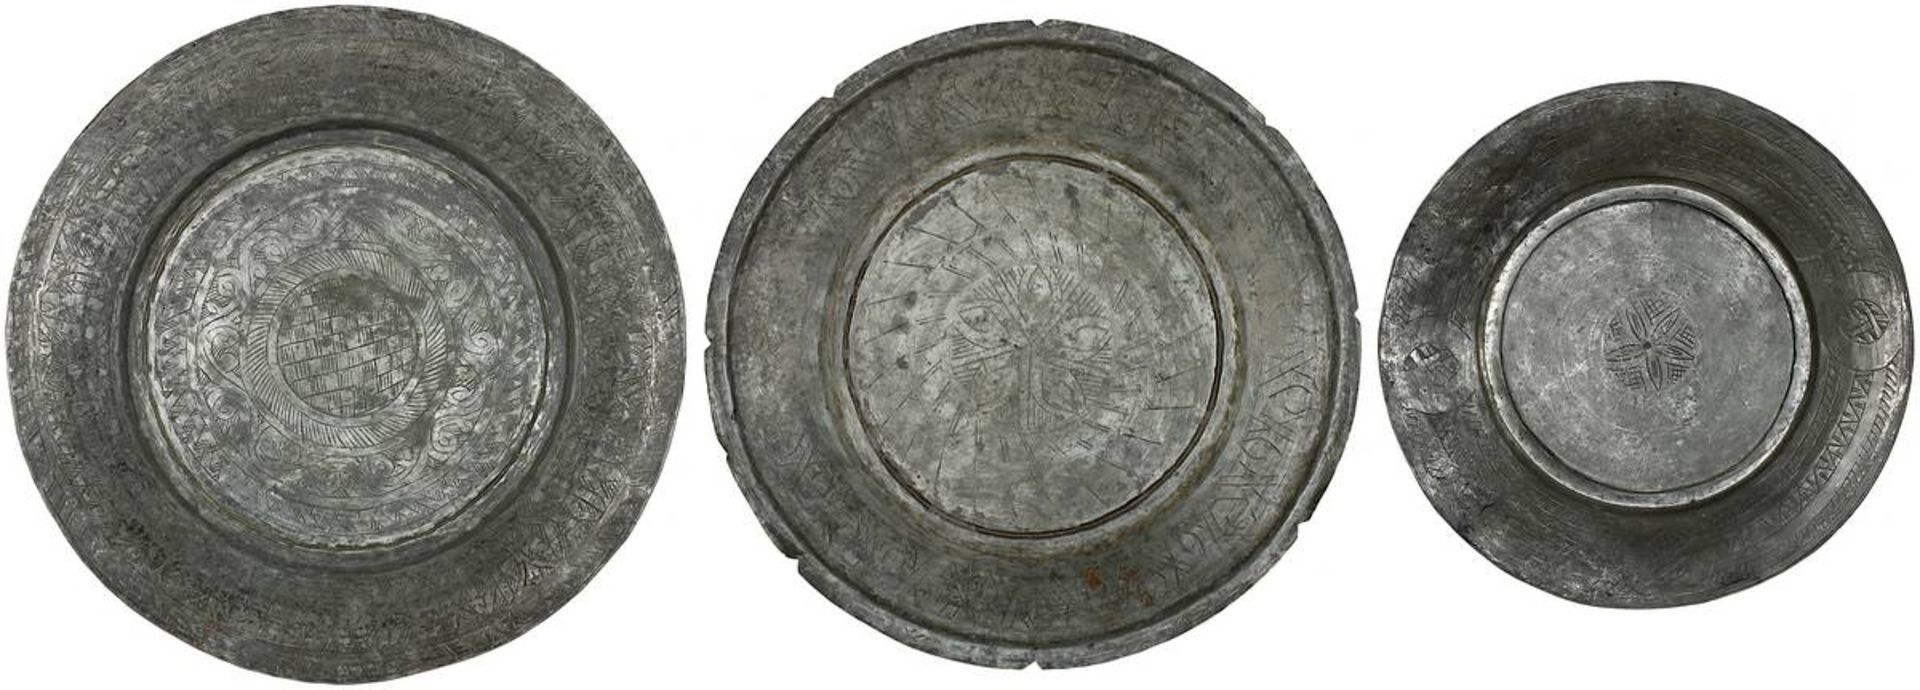 3 Servierteller aus verzinntem Kupfer, Syrien 1. H. 20. Jh., Handarbeit, reicher gravierter